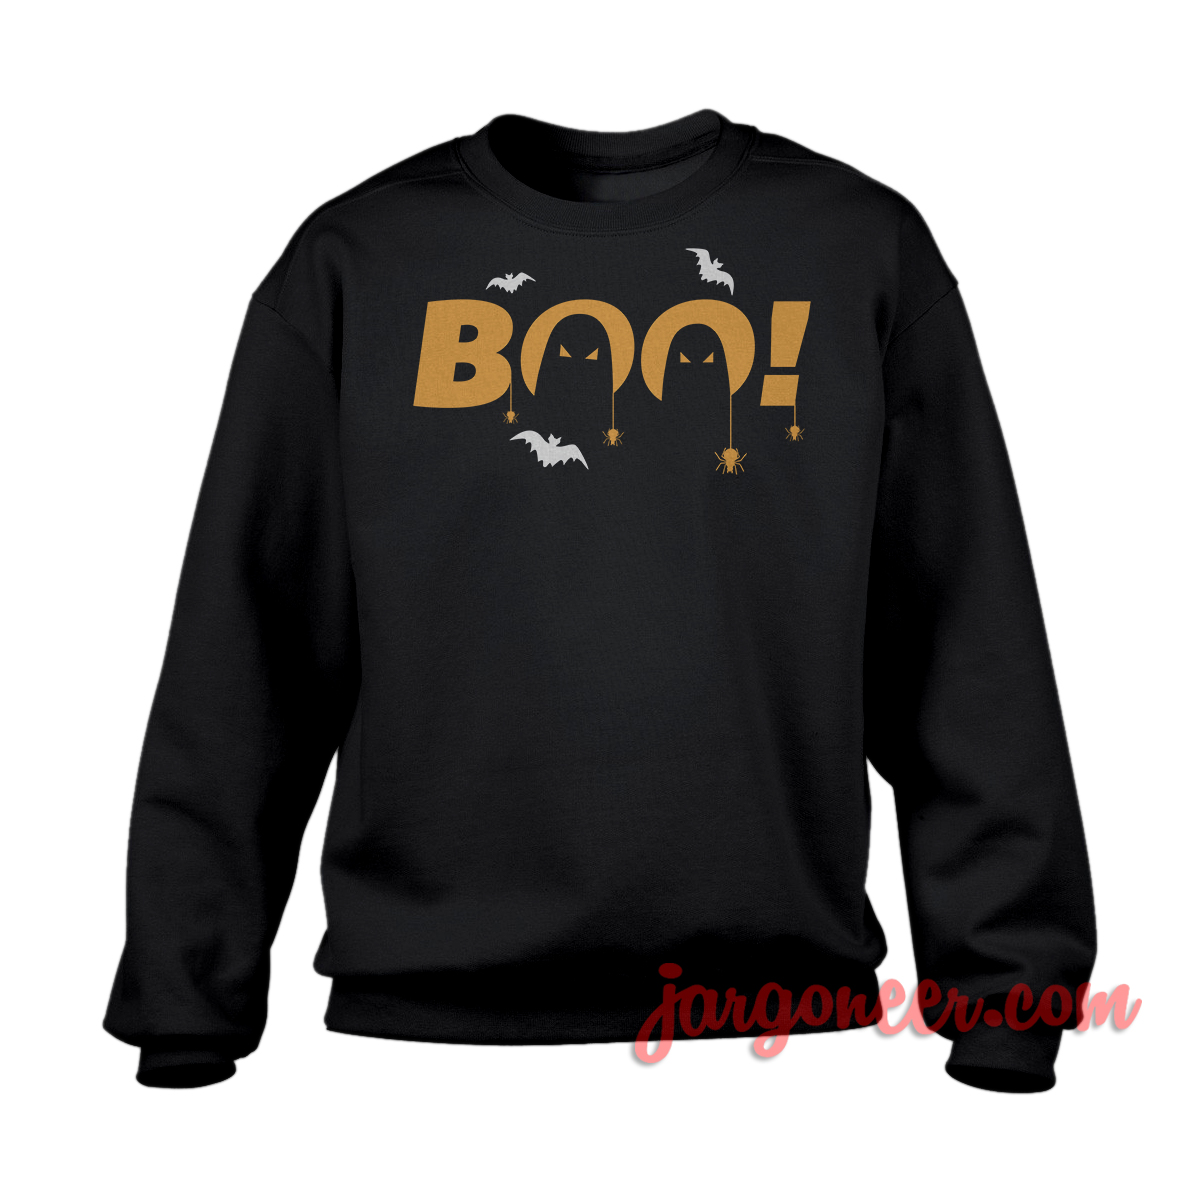 Boo Black SS - Shop Unique Graphic Cool Shirt Designs